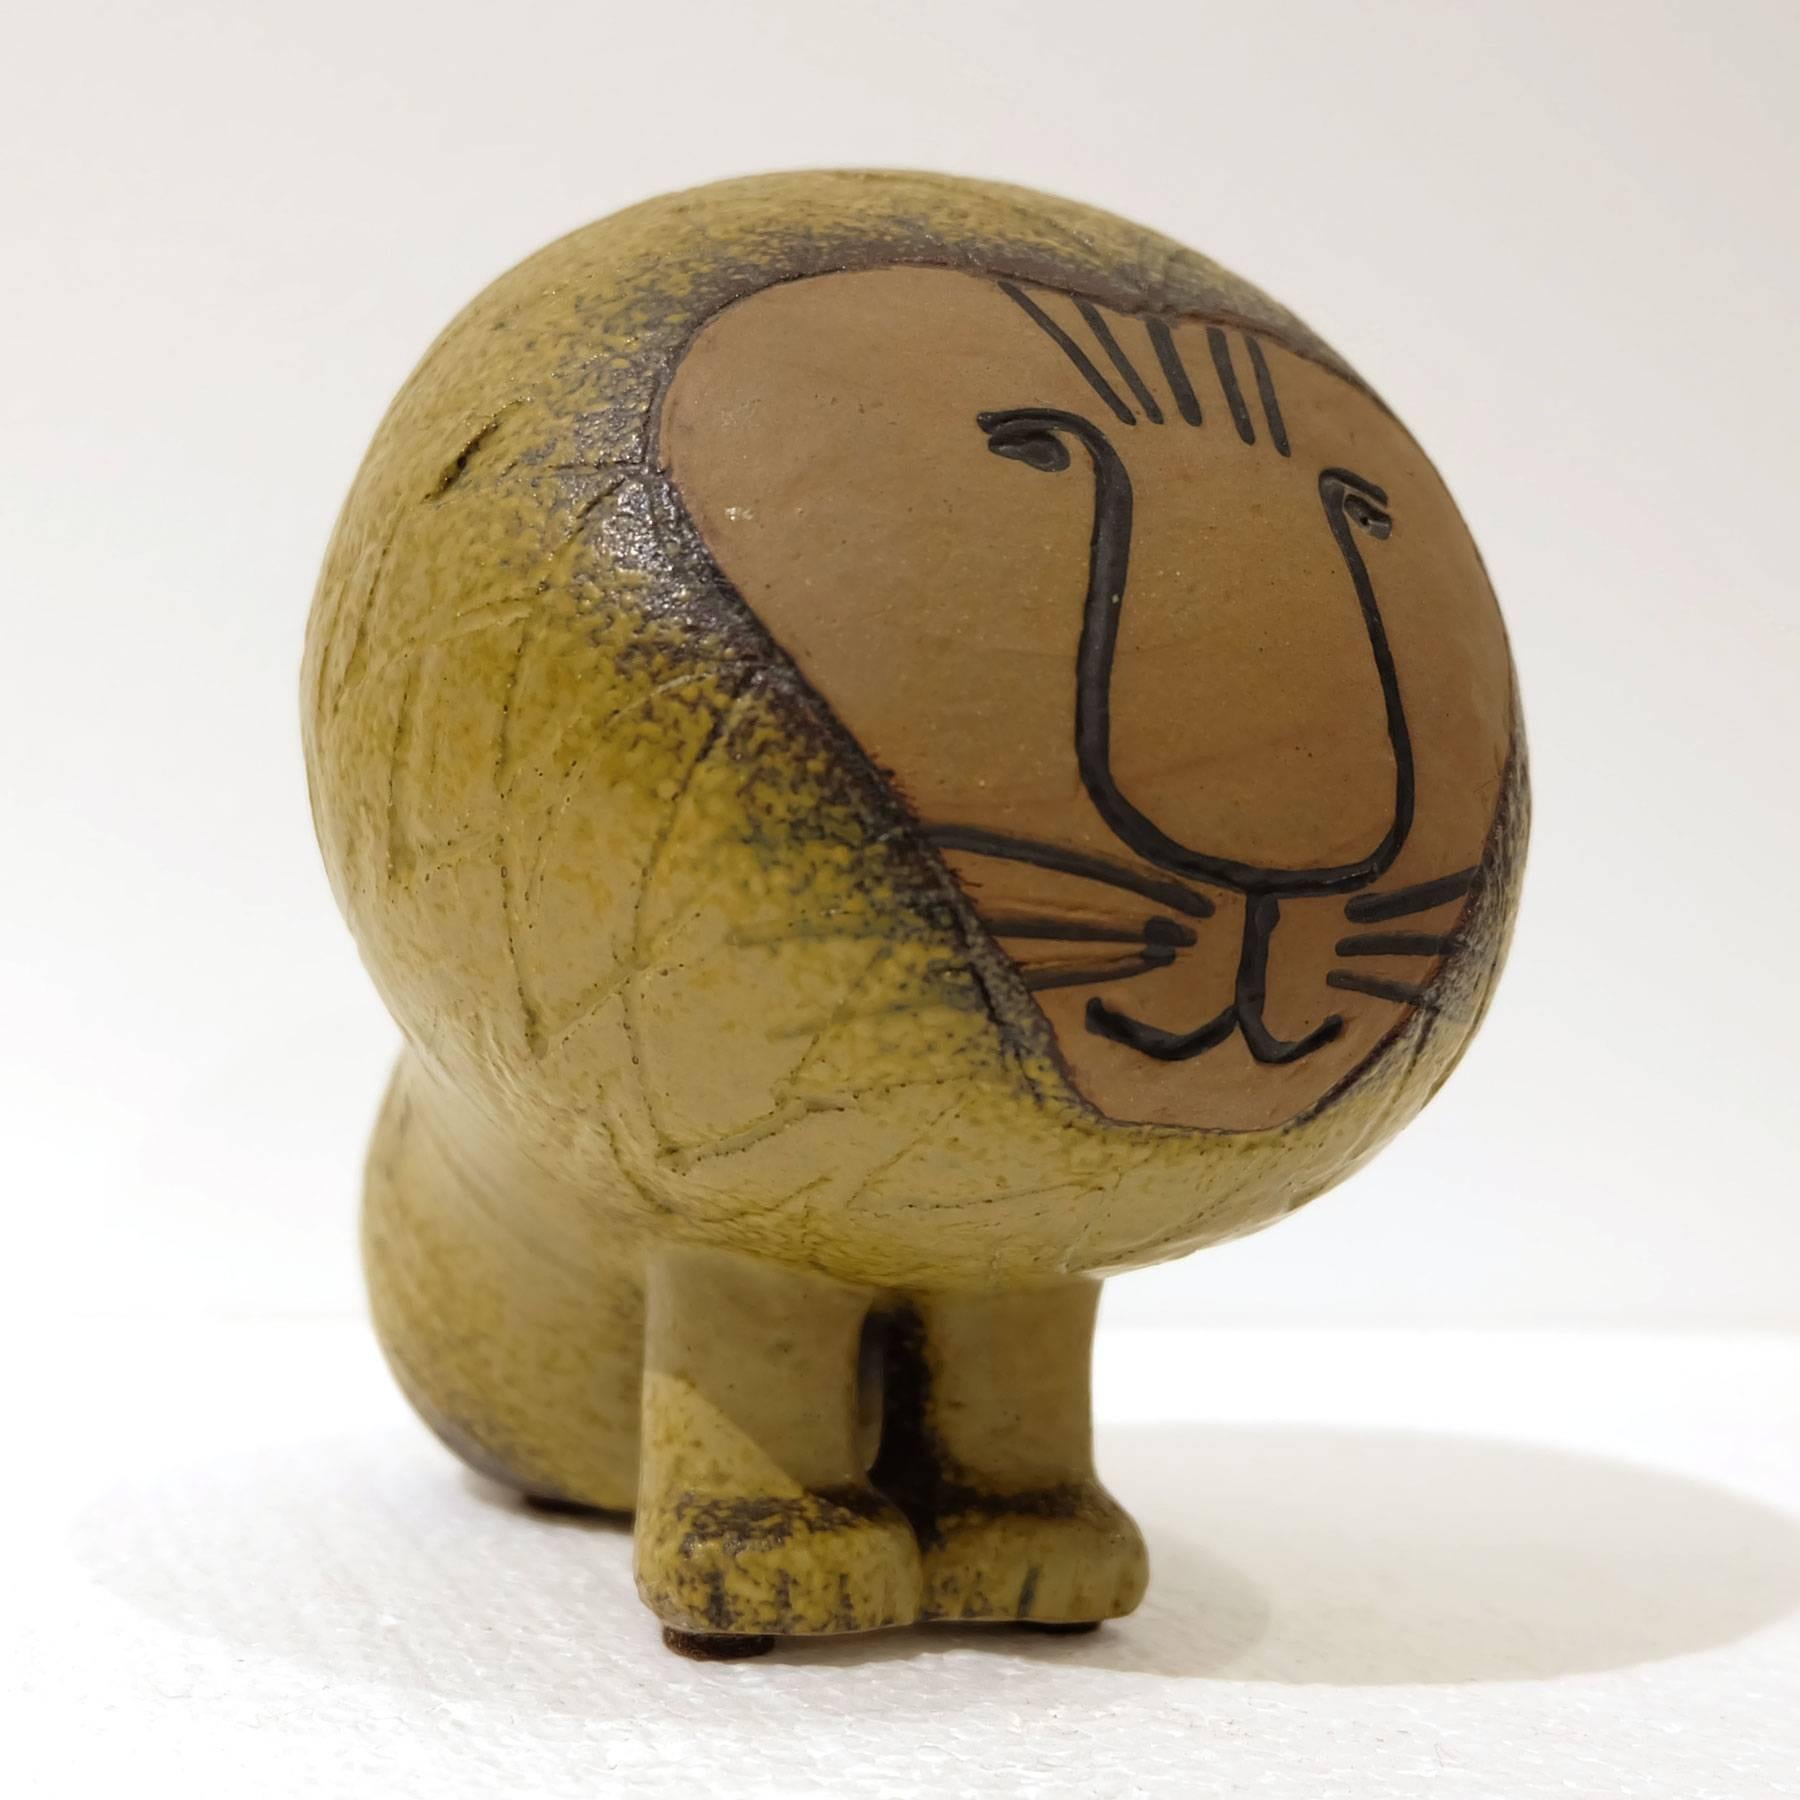 Lisa Larson Lion Figure, Gustavsberg Pottery Sweeden, signé
également illustré vendu séparément la figurine Bulldog